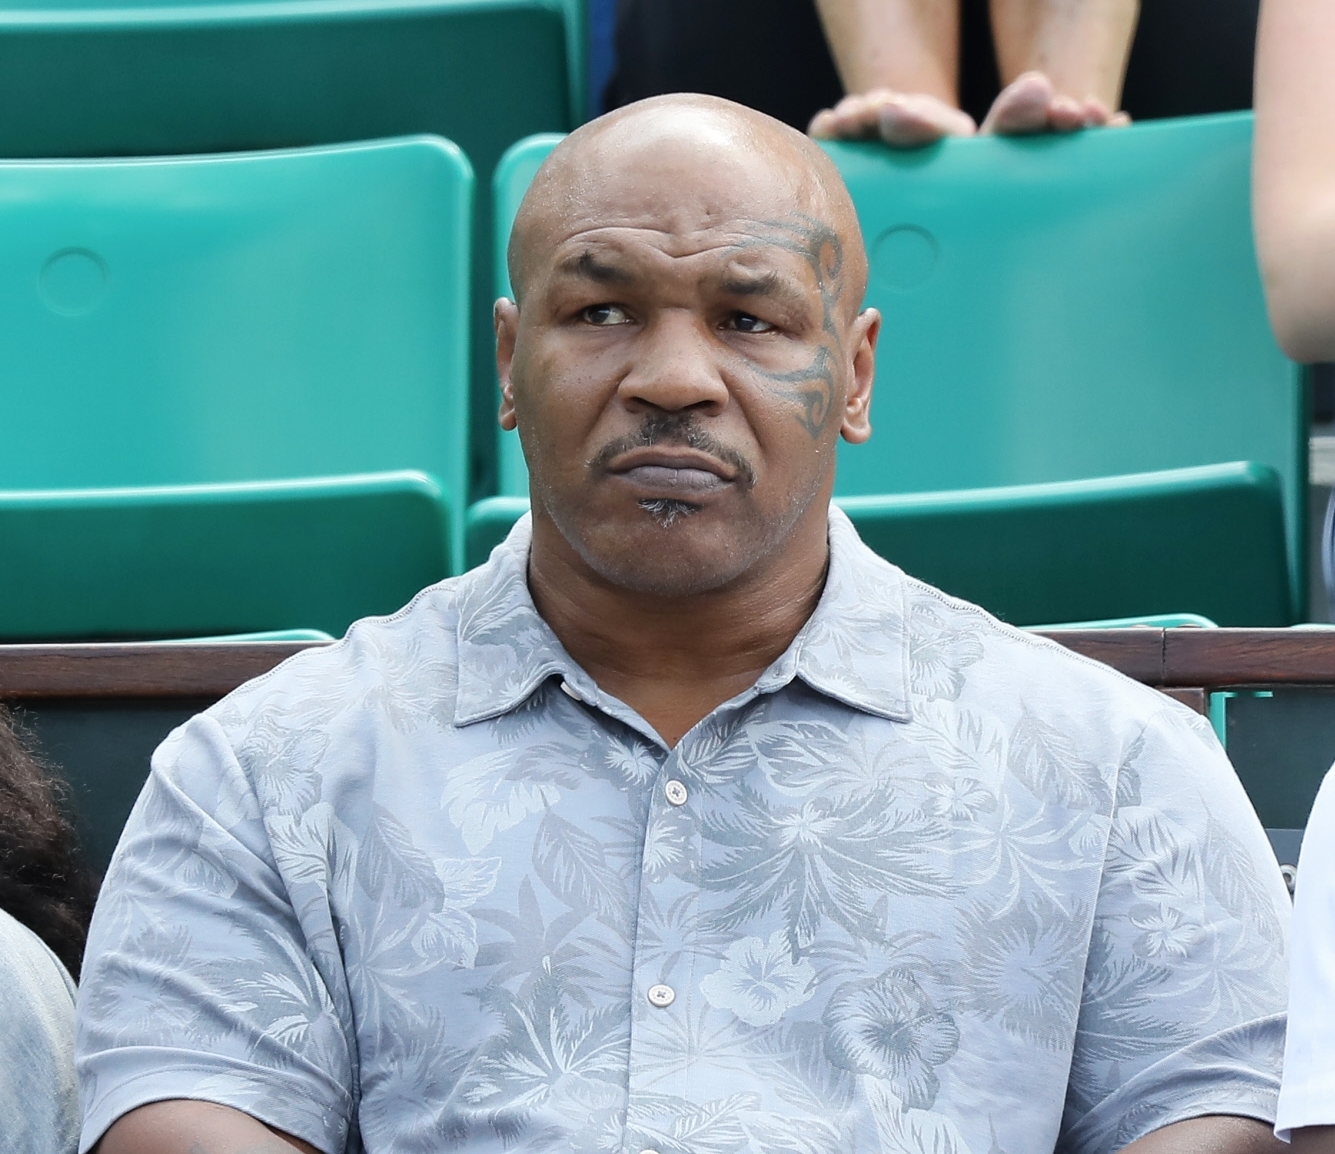 El ex boxeador Mike Tyson.